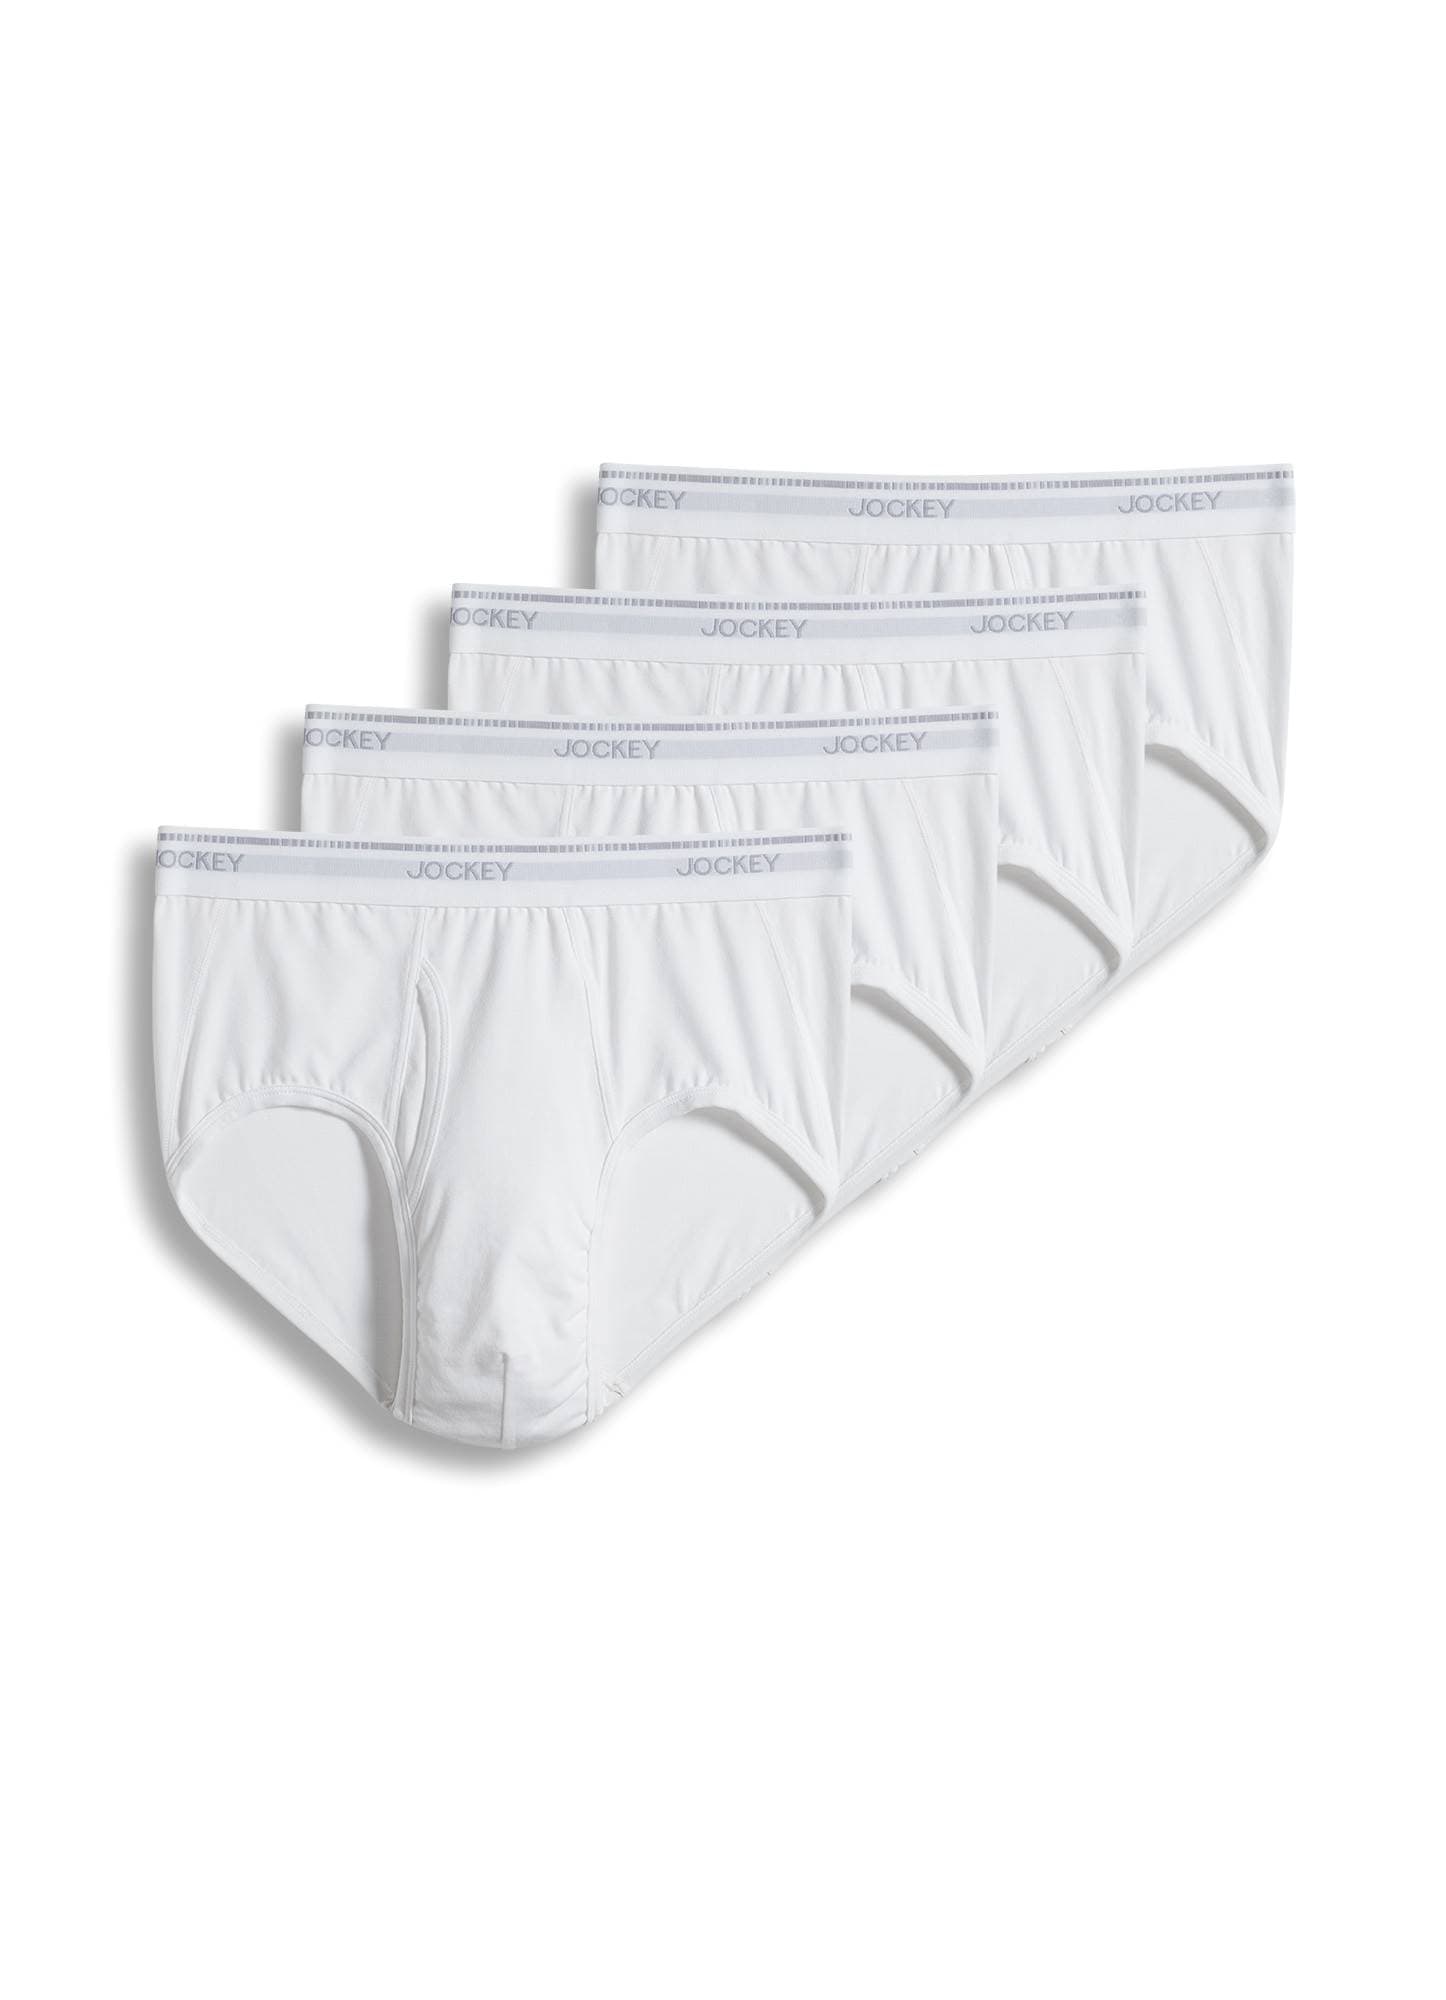 Men's Underwear   MaxStretch  Brief - 4 Pack, White, s